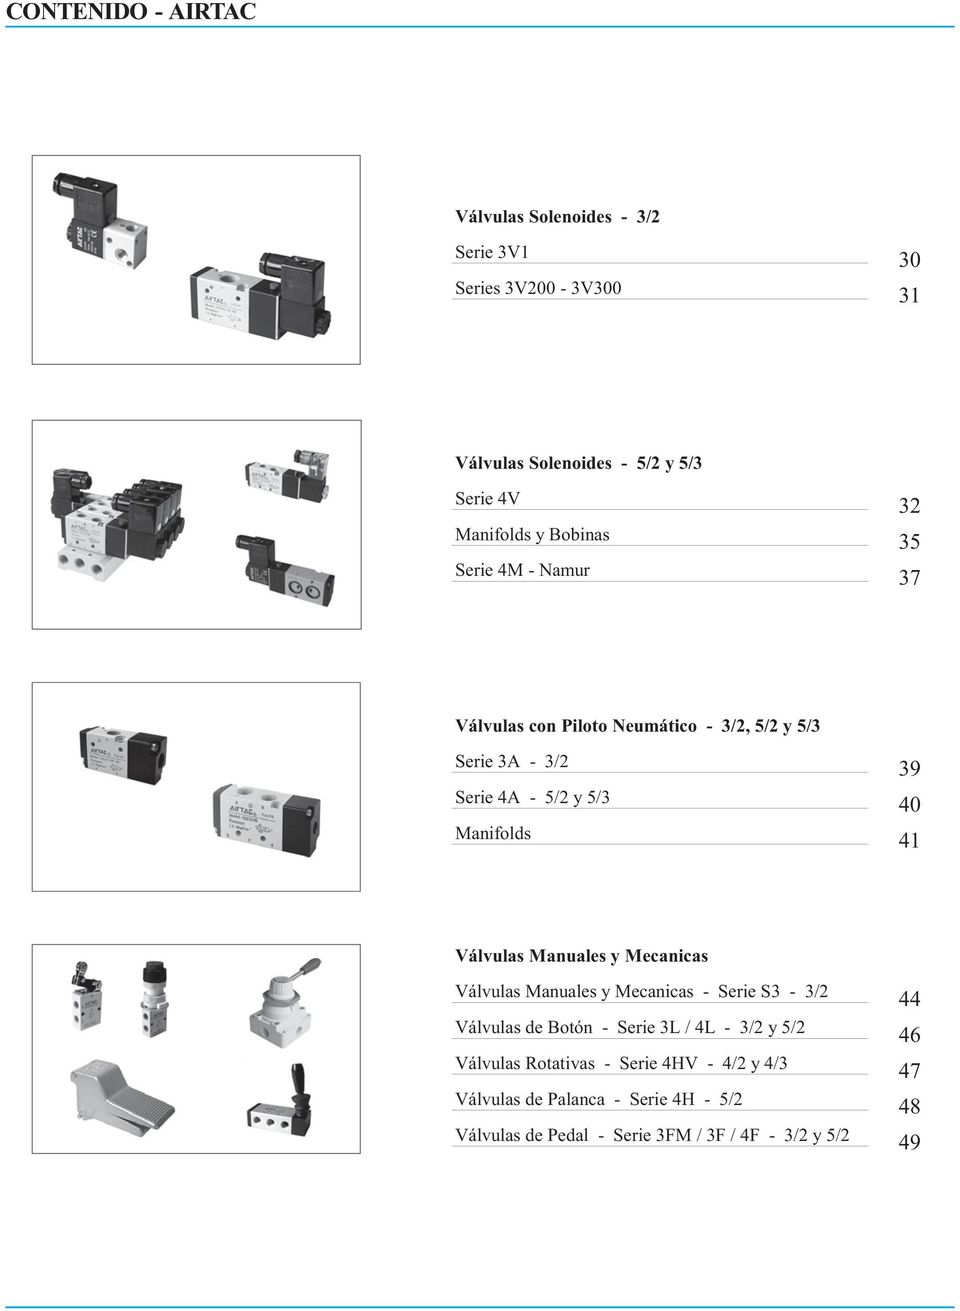 40 Válvulas Manuales y Mecanicas Válvulas Manuales y Mecanicas - Serie S3-3/2 44 Válvulas de Botón - Serie 3L / 4L - 3/2 y 5/2 46